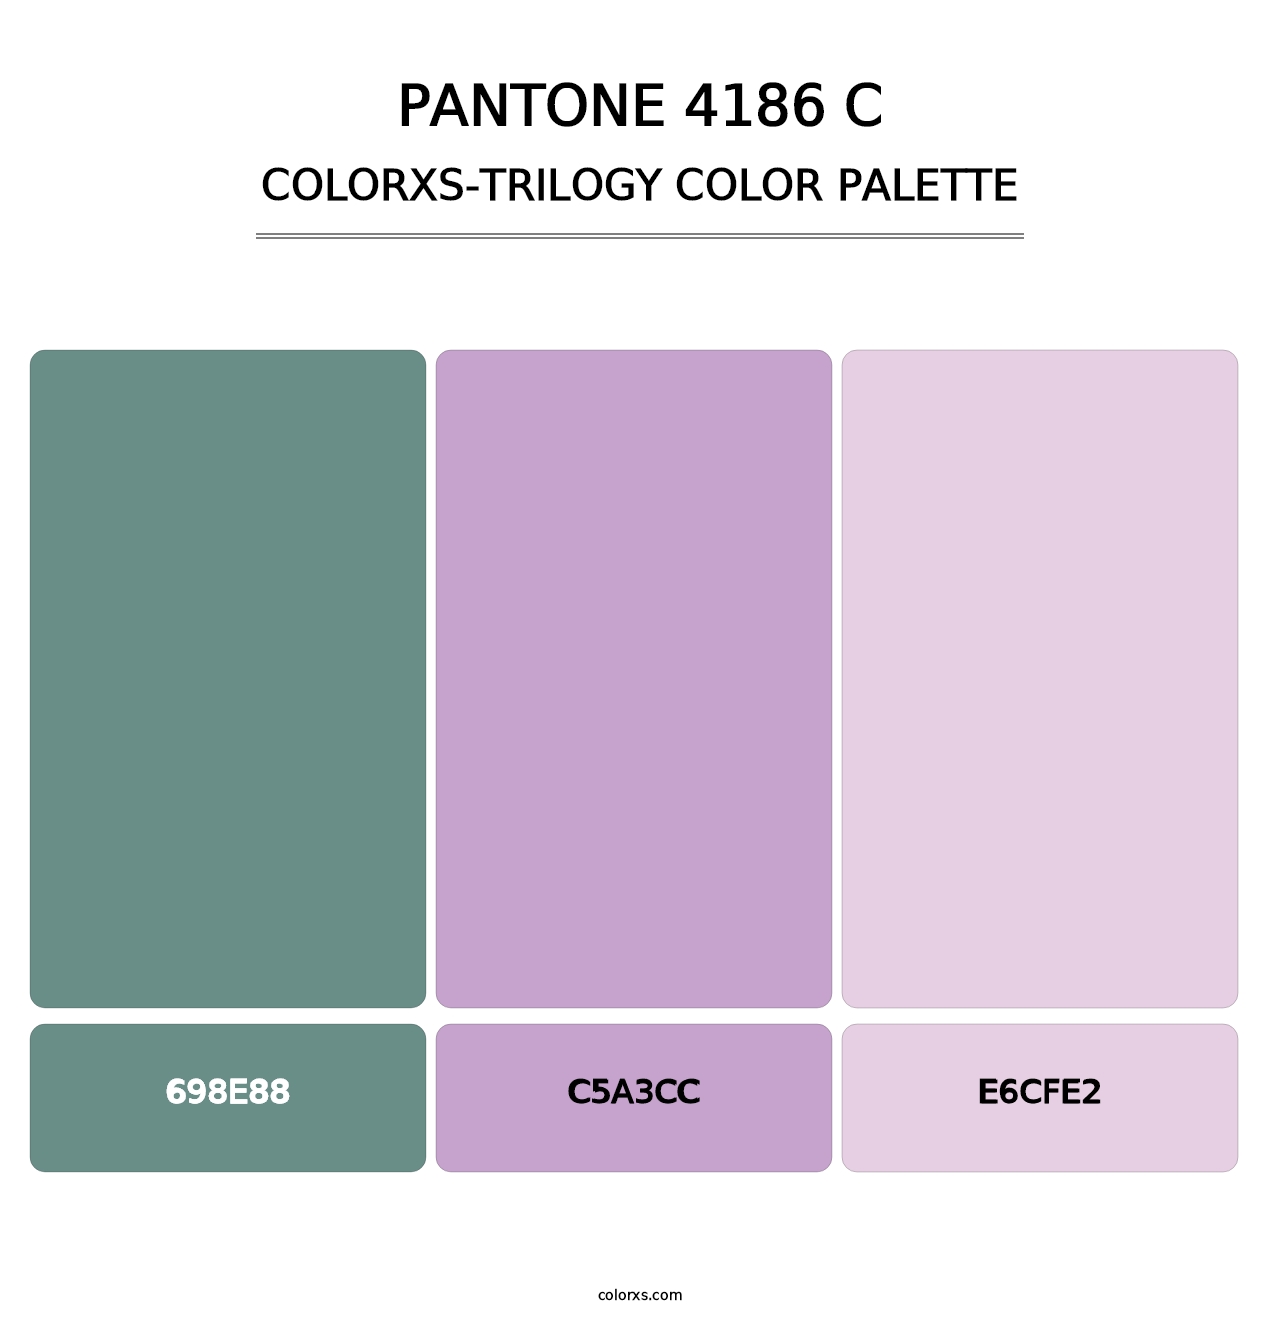 PANTONE 4186 C - Colorxs Trilogy Palette